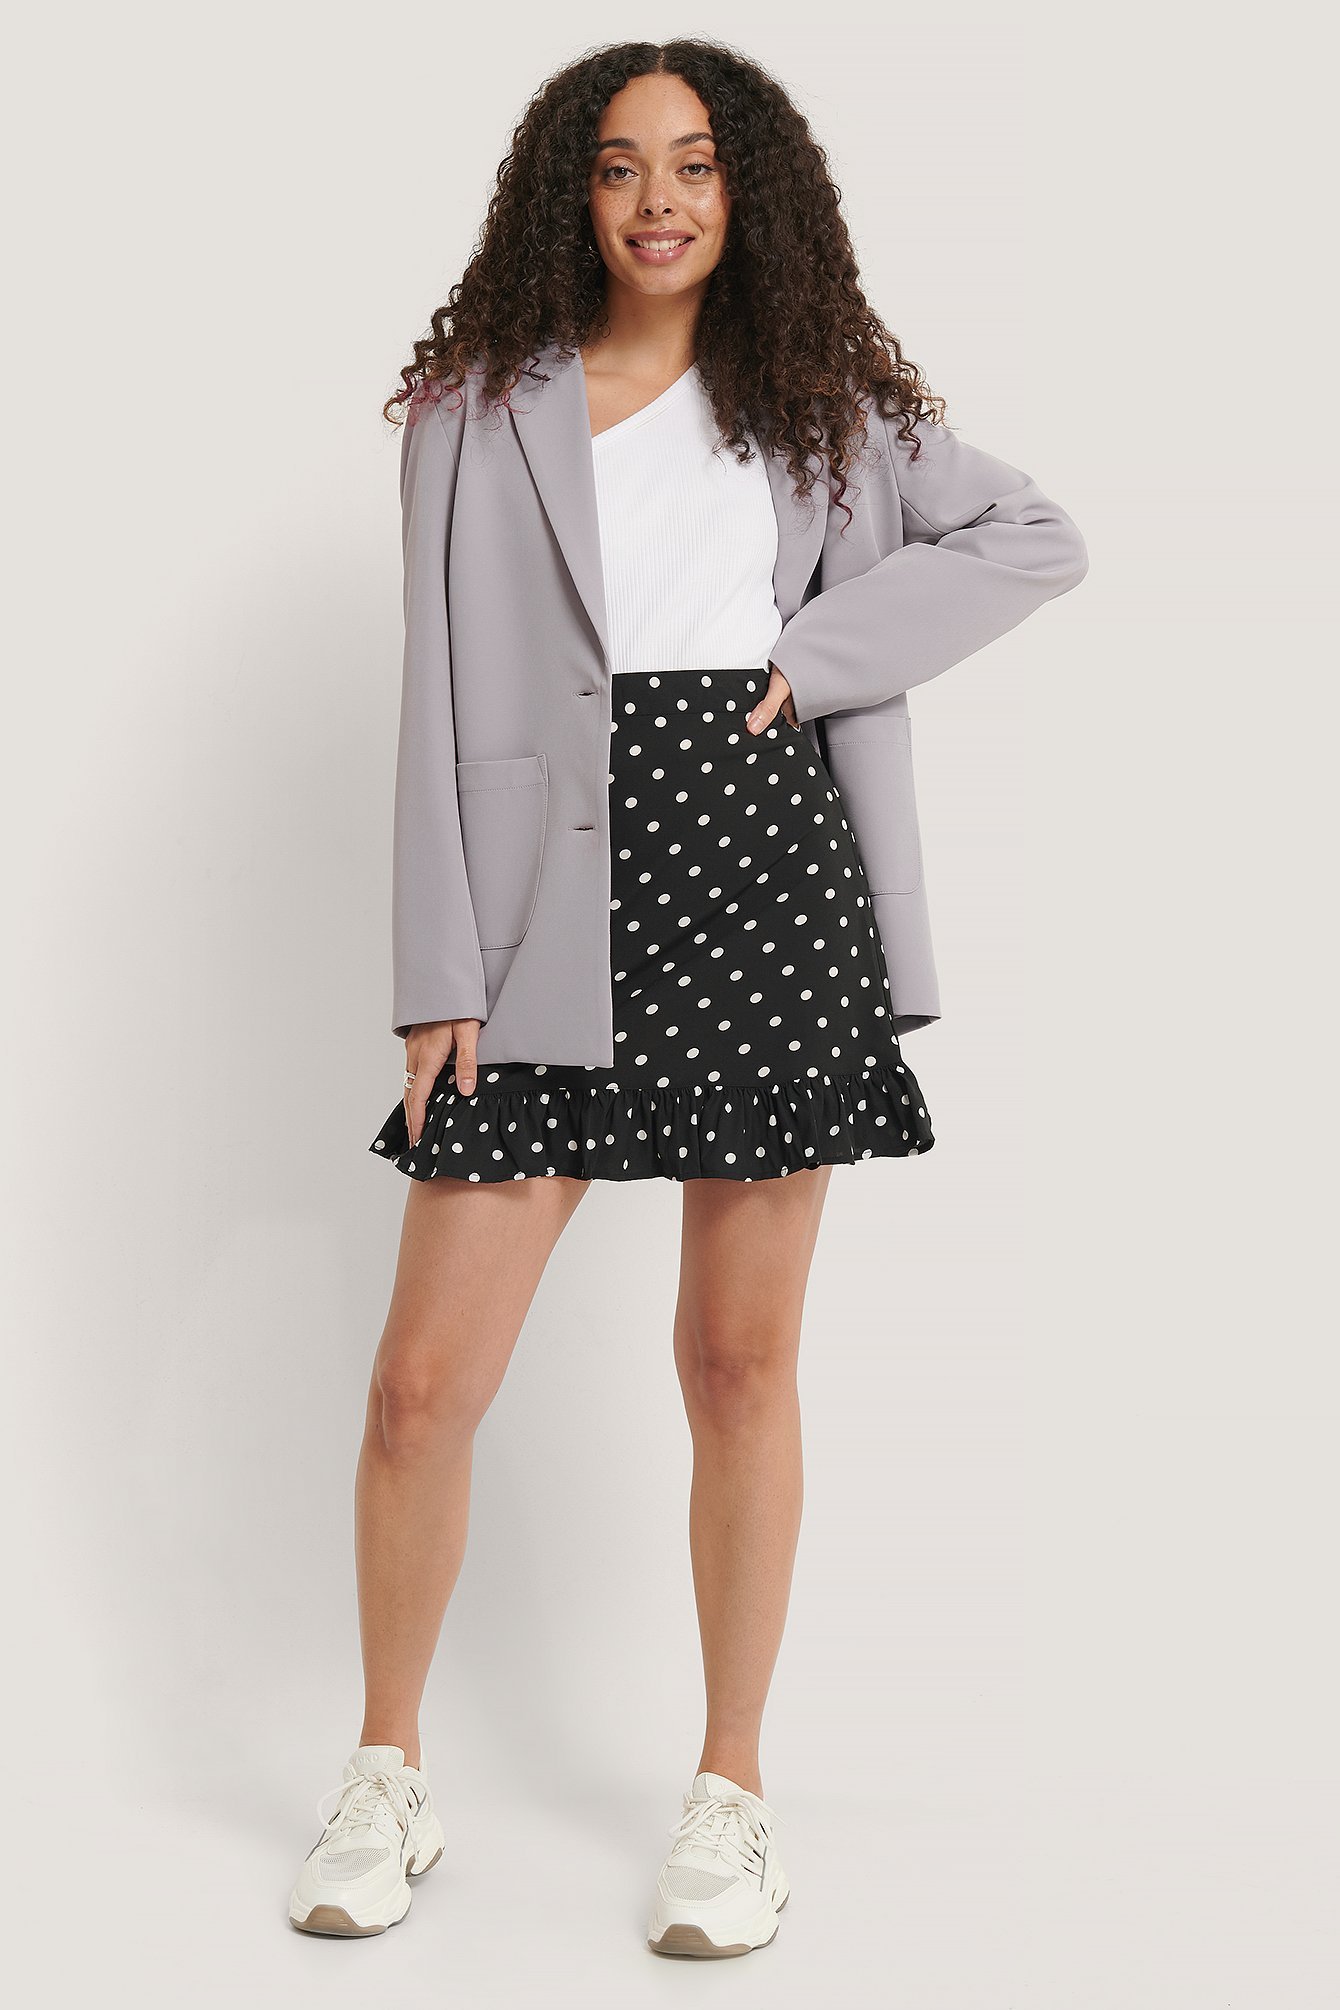 Mini Flounce Skirt Outfit.